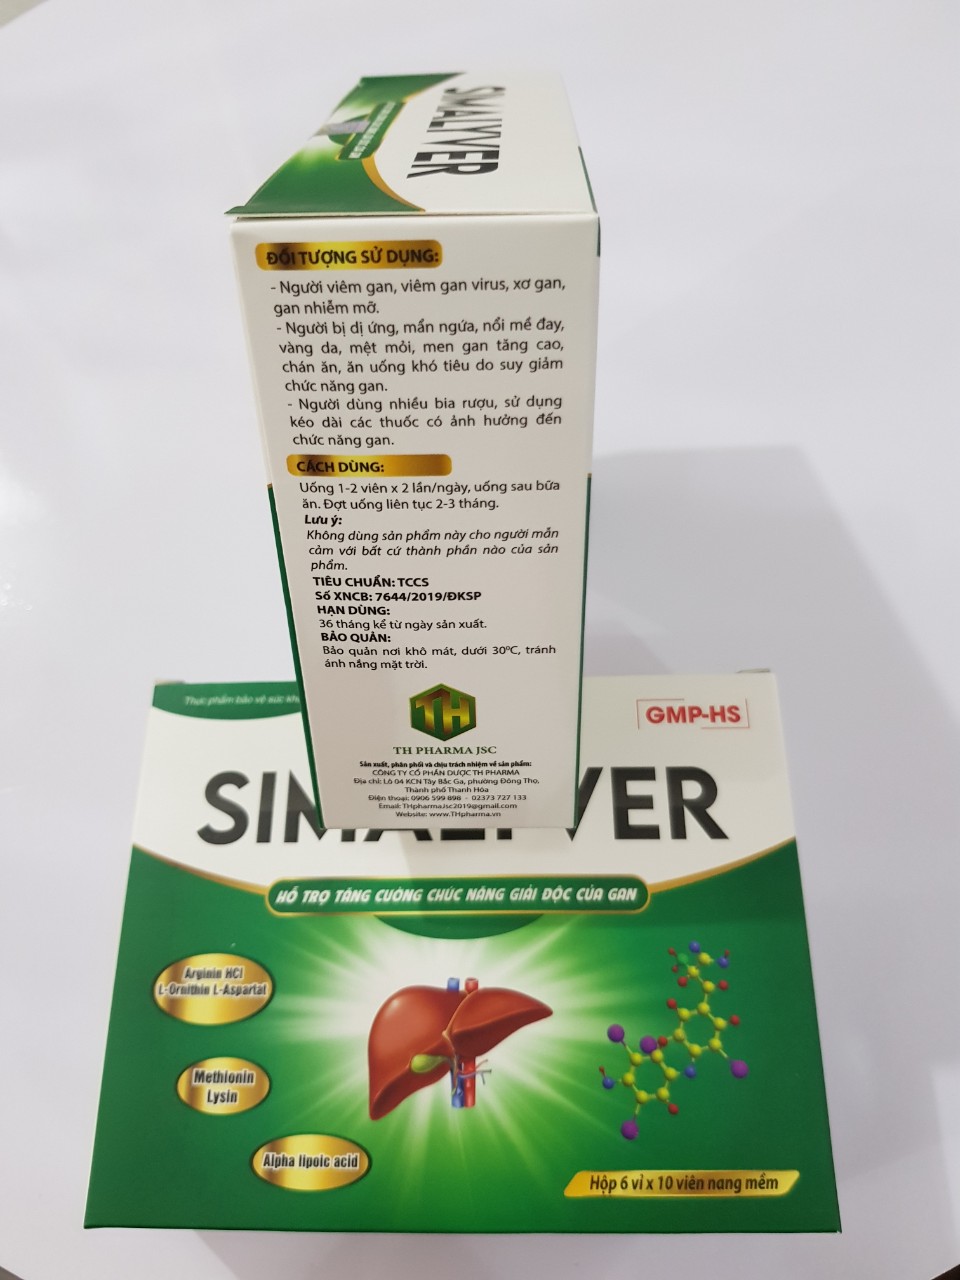 Simalyver: Hỗ trợ tăng cường chức năng giải độc gan.